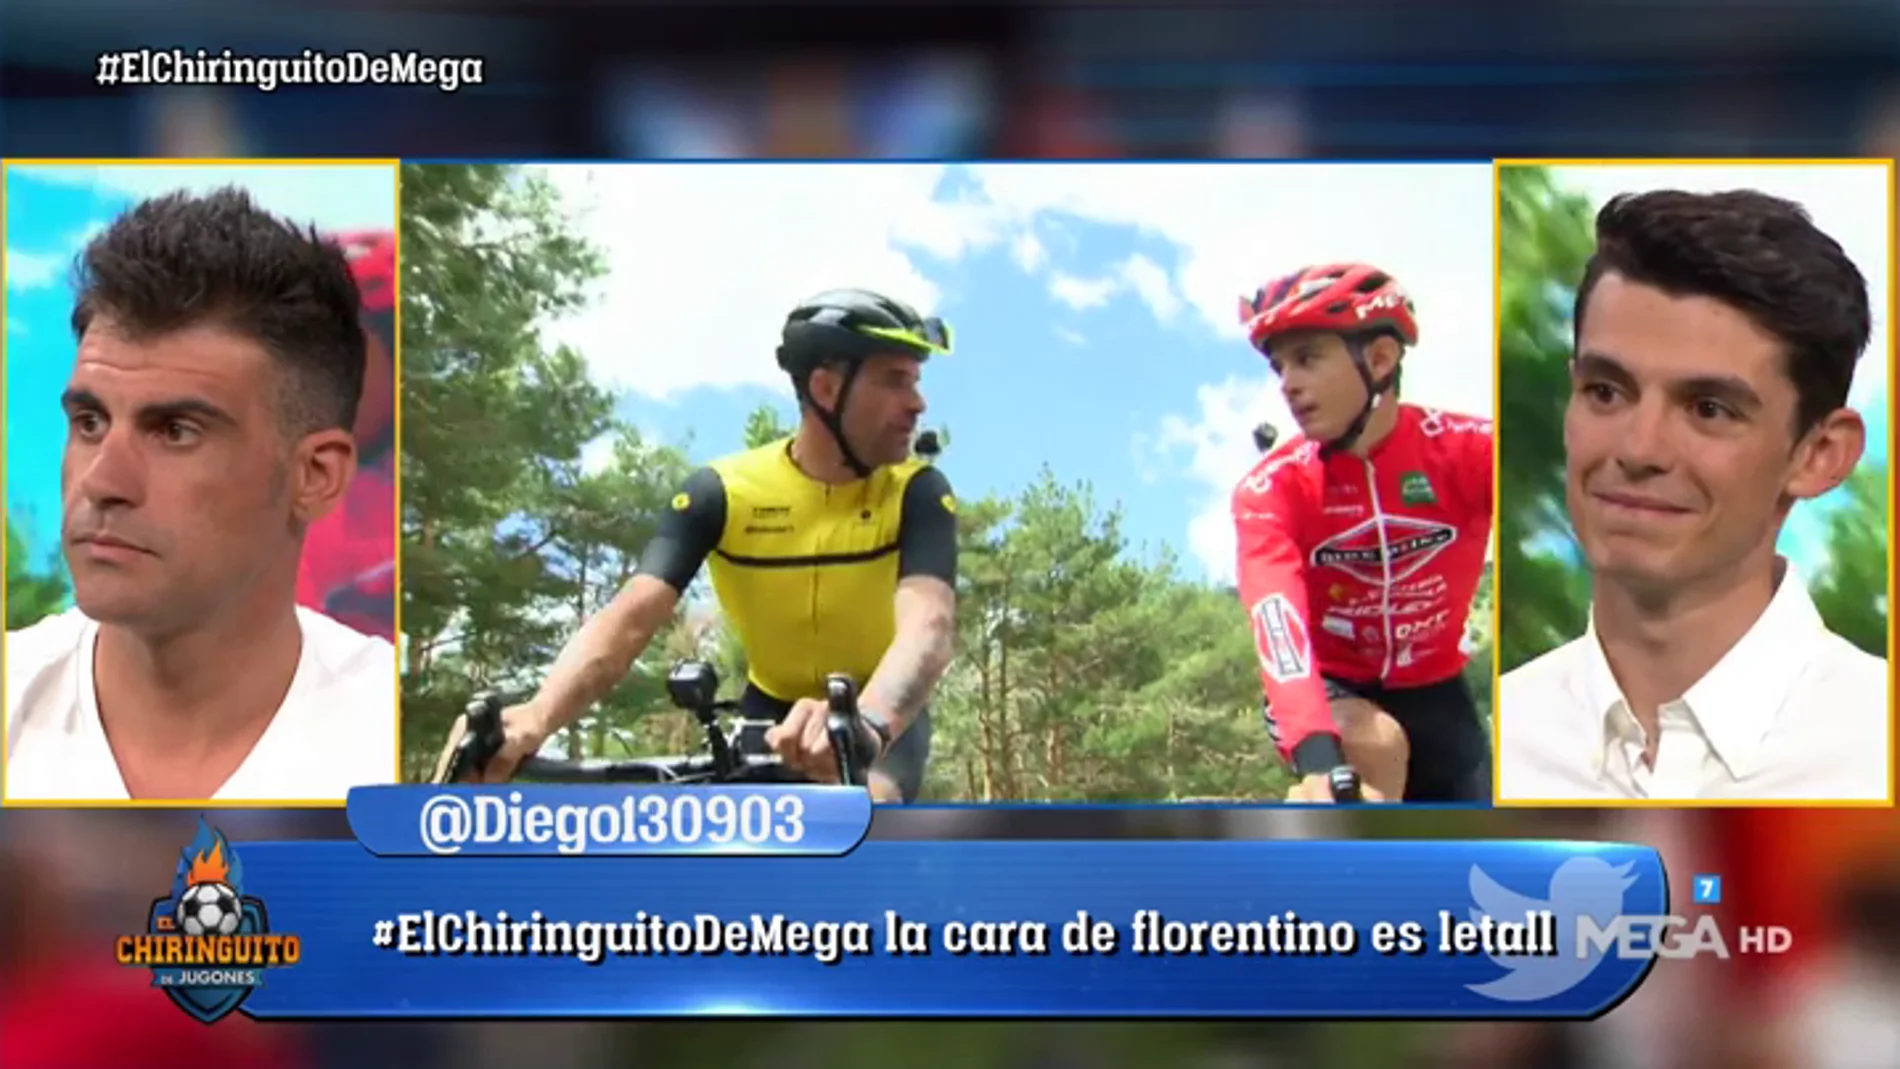 Óscar Pereiro recuerda su carrera deportiva: "Volvería mañana a ser ciclista"